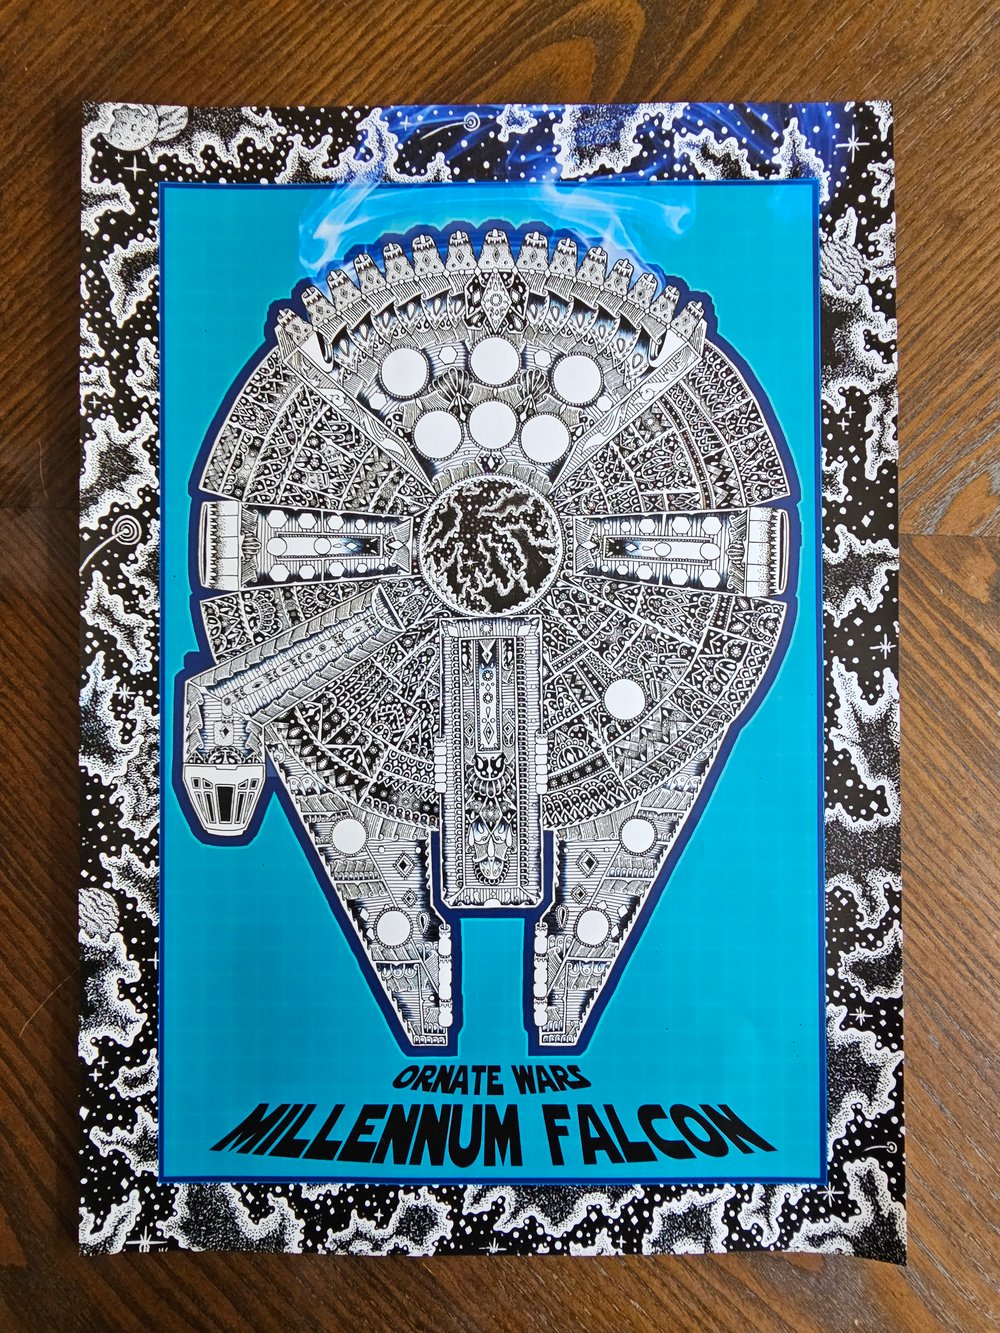 Ornate millennium falcon poster 